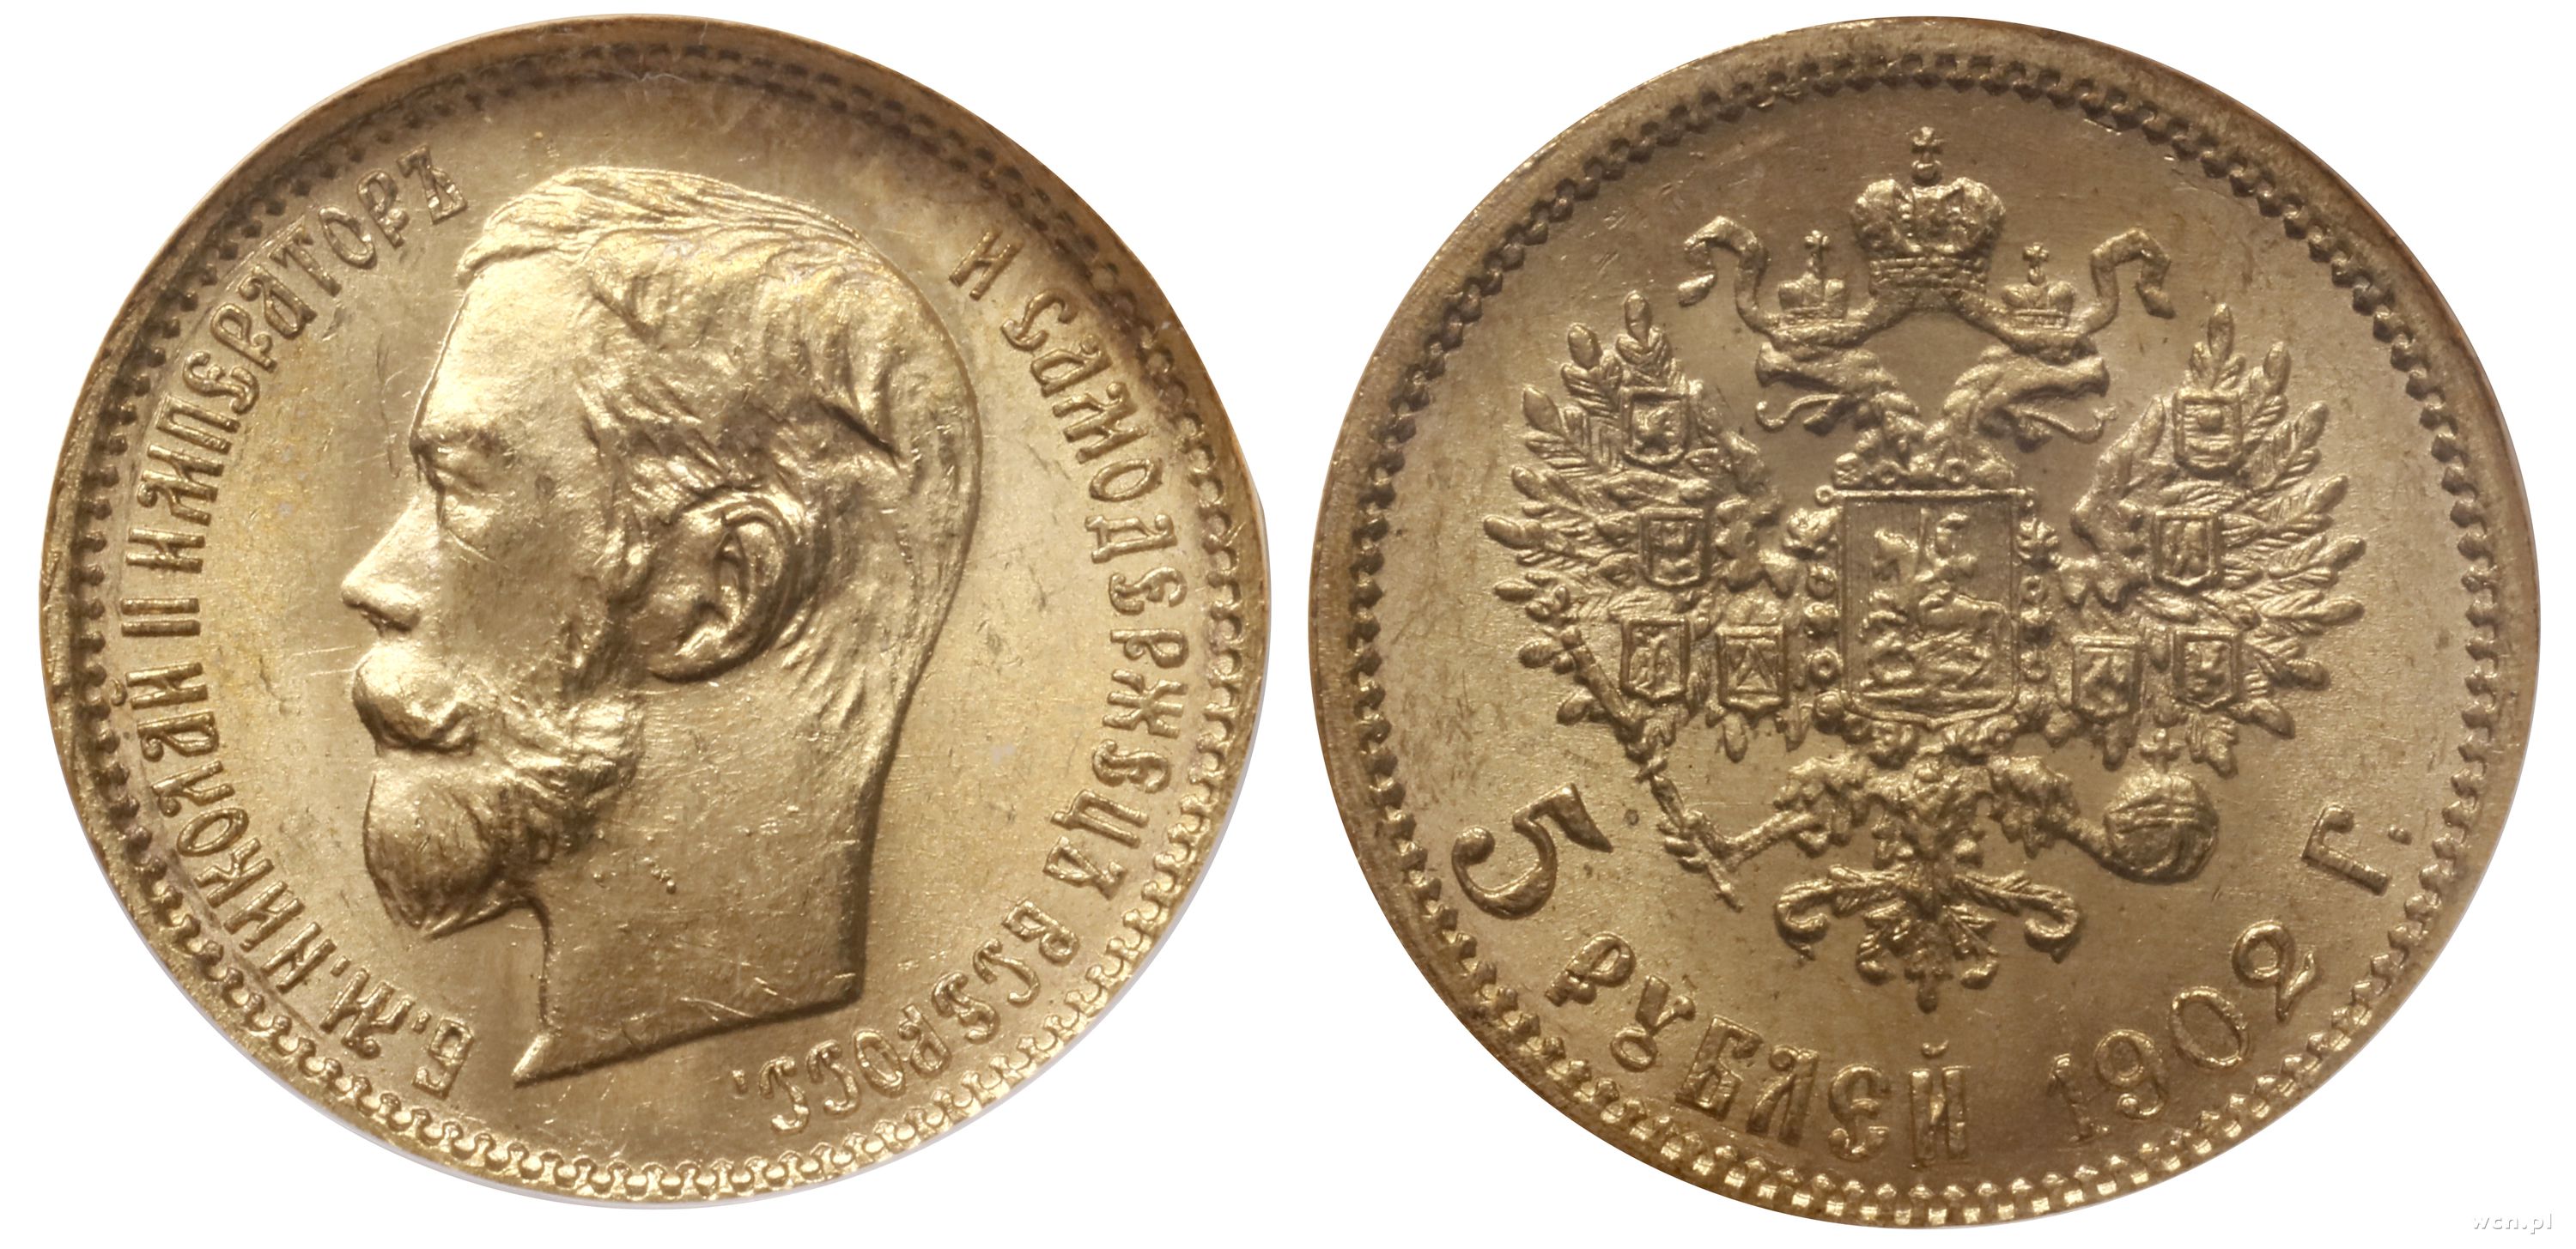 5 рублей николая. Гурт золотой монеты 5 рублей 1898 года. Золотые монеты Витте.